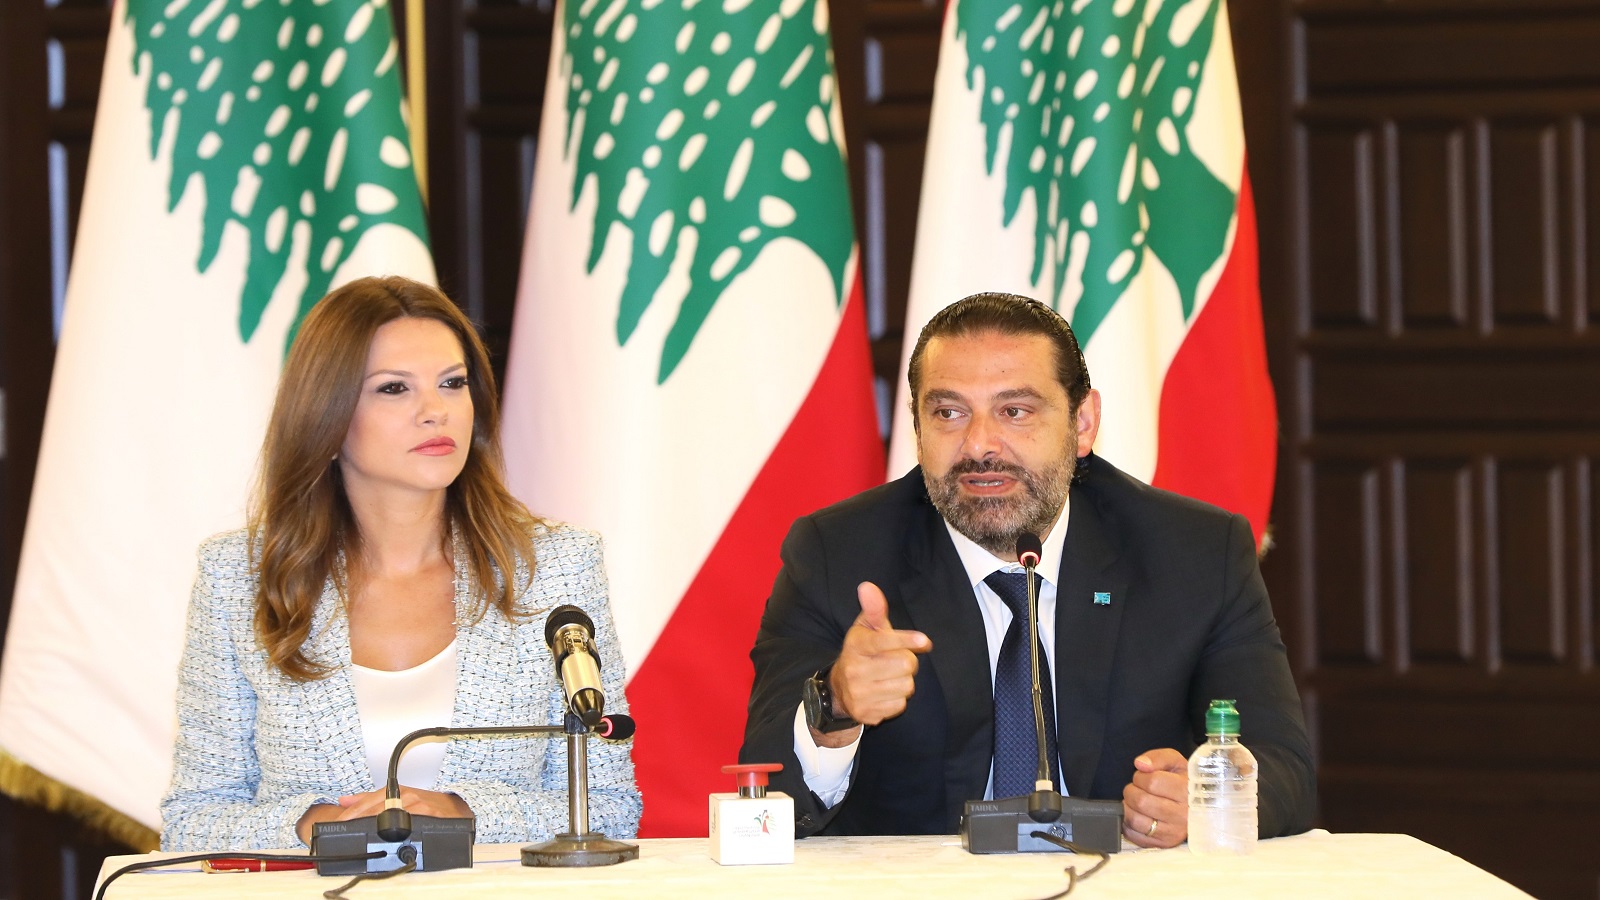 للمرة الأولى في لبنان: جلسة تشريعية للنساء فقط